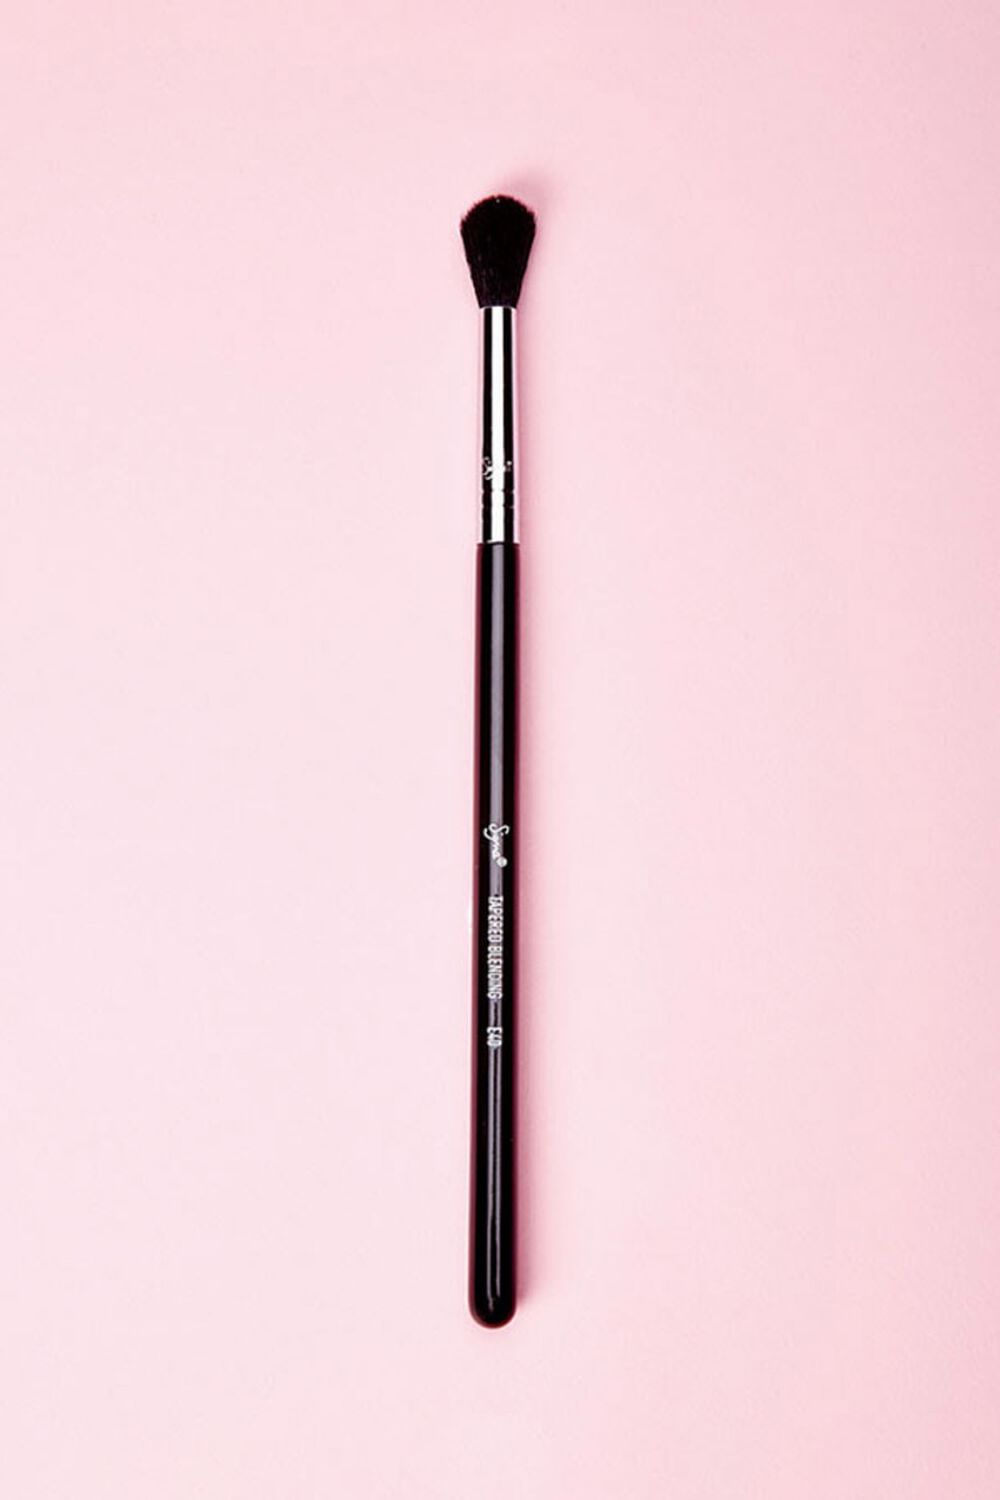 BLACK Sigma Beauty E40 – Tapered Blending Brush, image 1